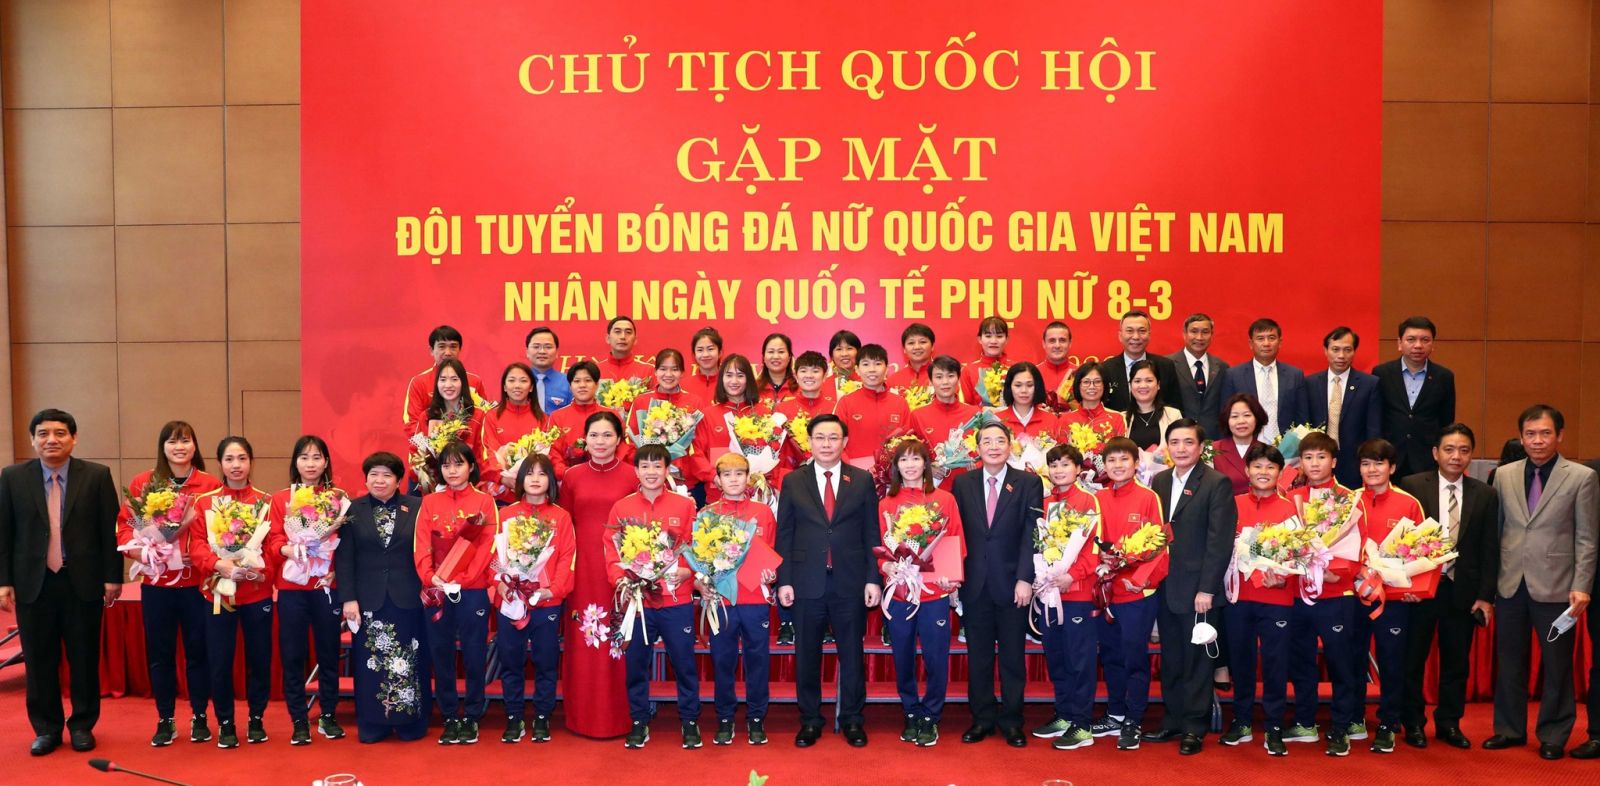 Chủ tịch Quốc hội và đội tuyển nữ Việt Nam